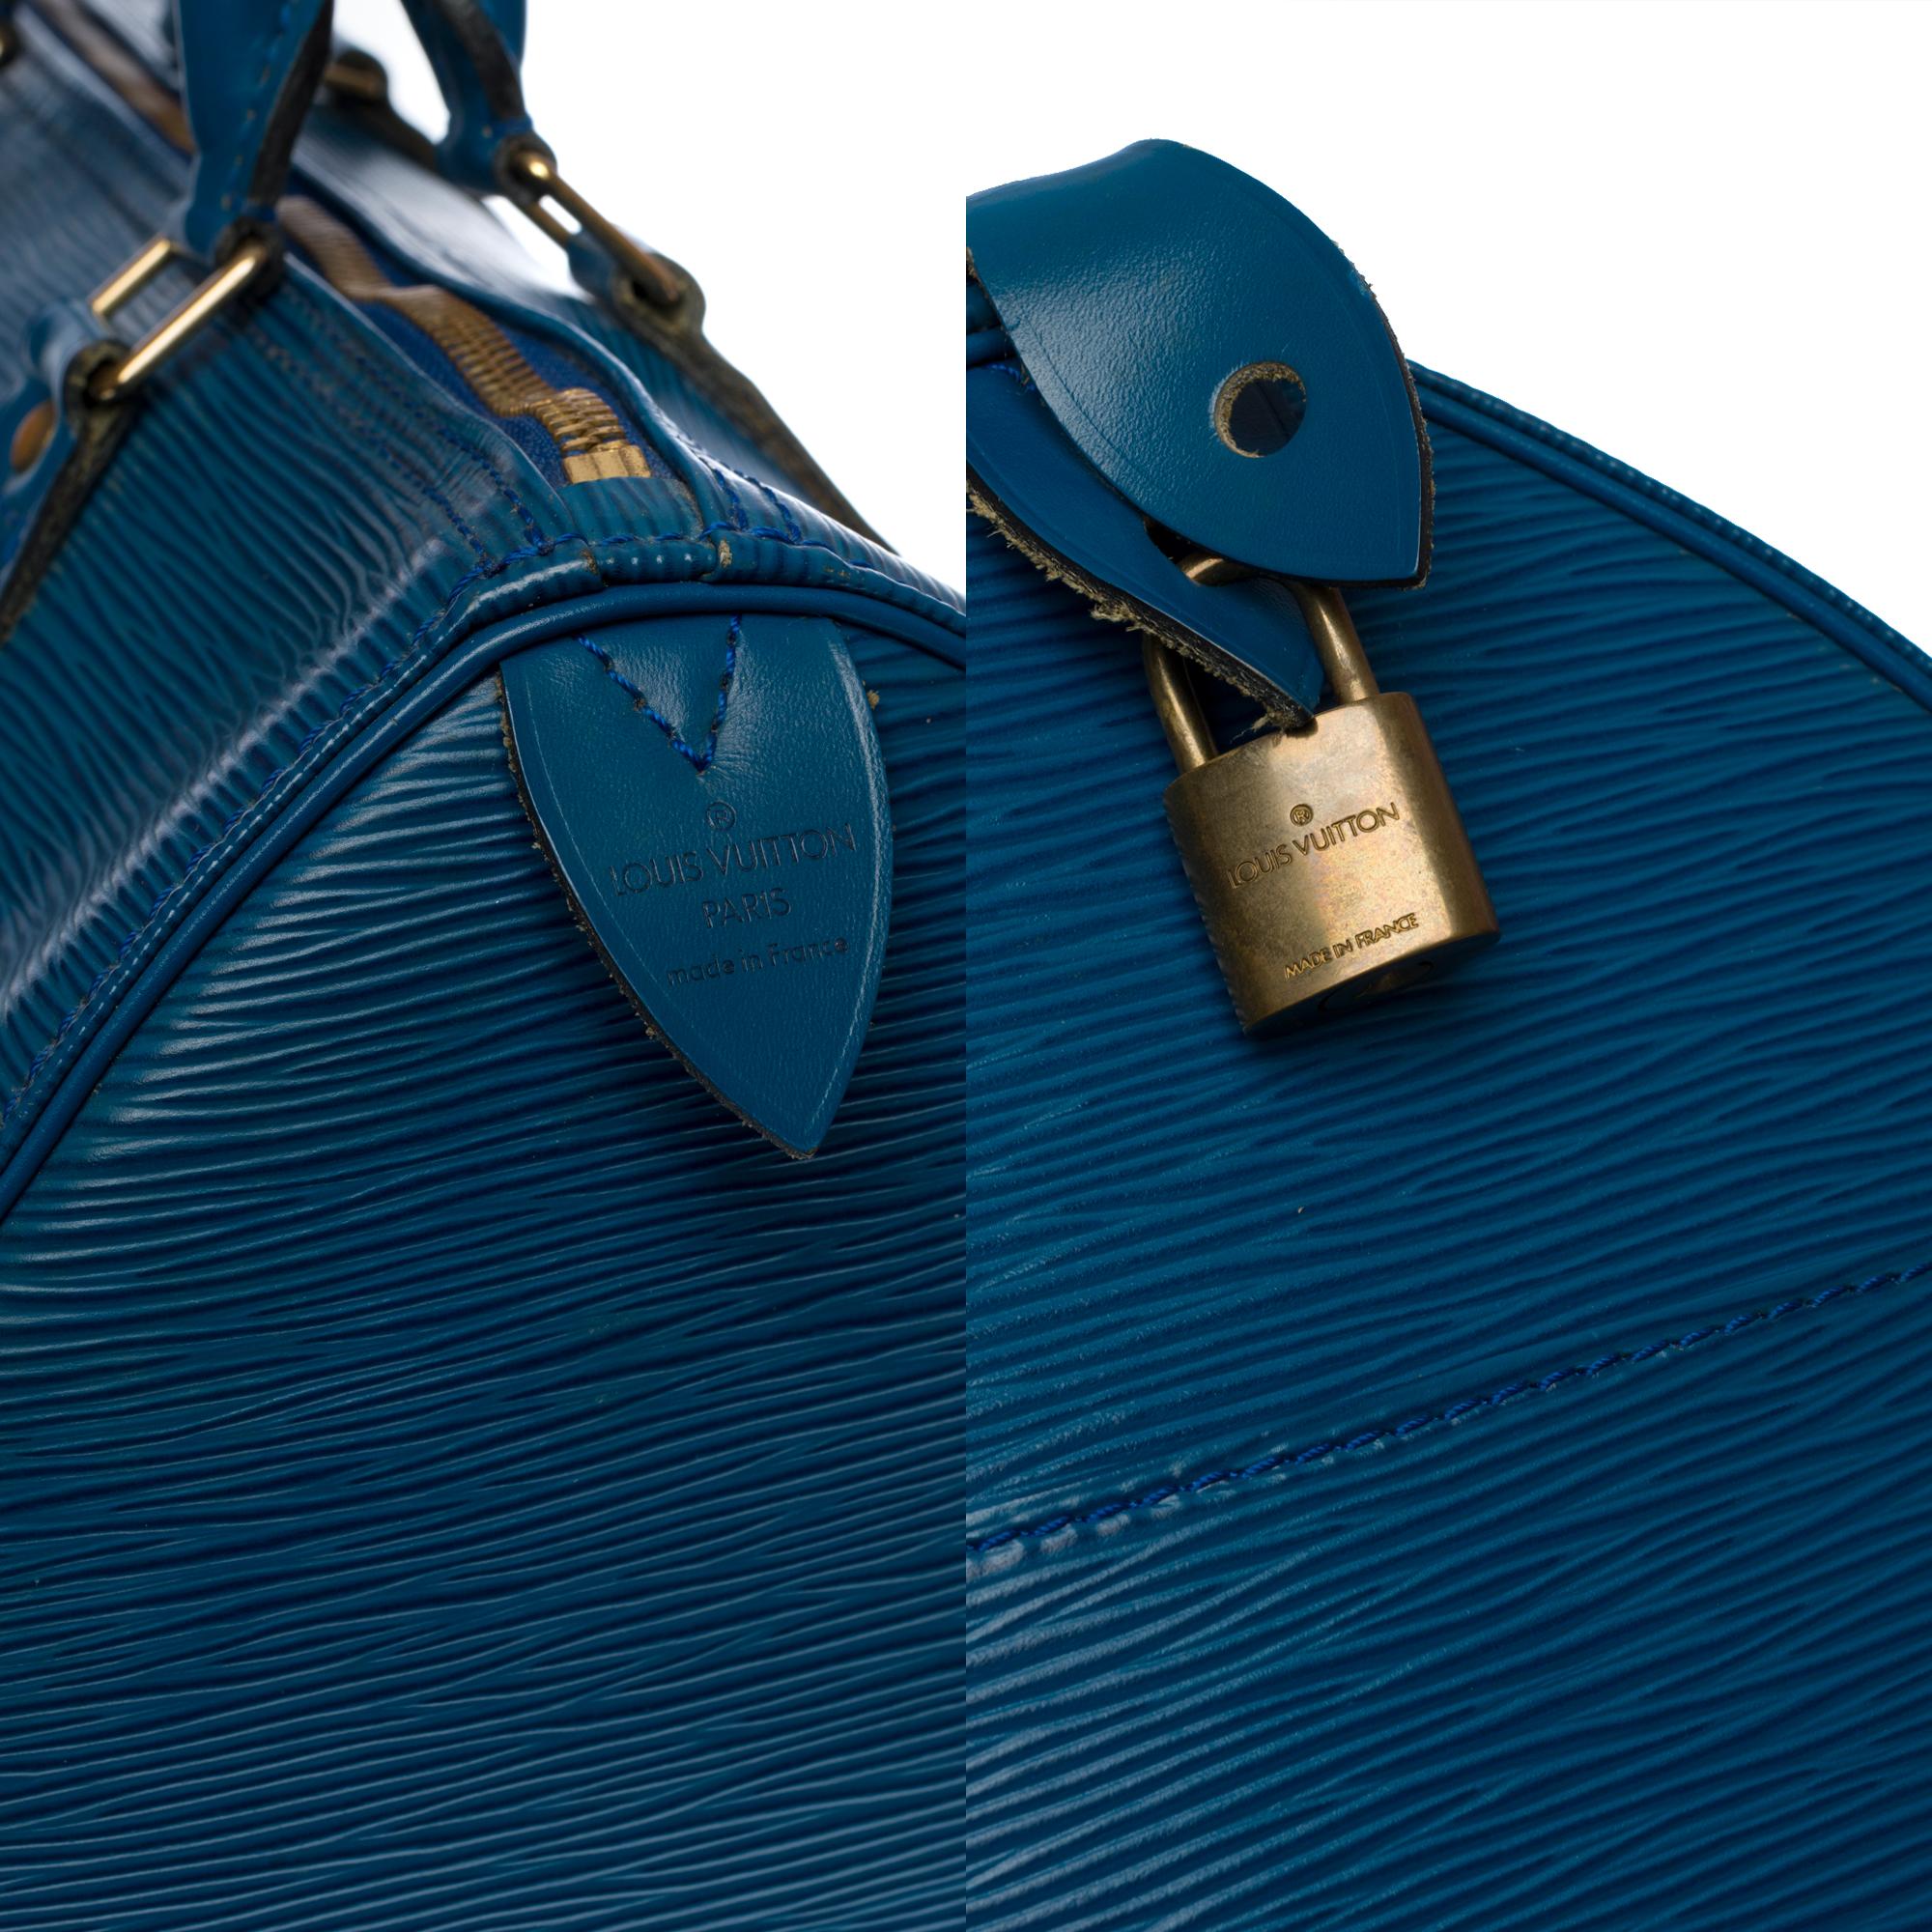 Louis Vuitton Speedy 30 Handtasche aus blauem kobaltfarbenem Pi-Leder und goldenen Beschlägen für Damen oder Herren